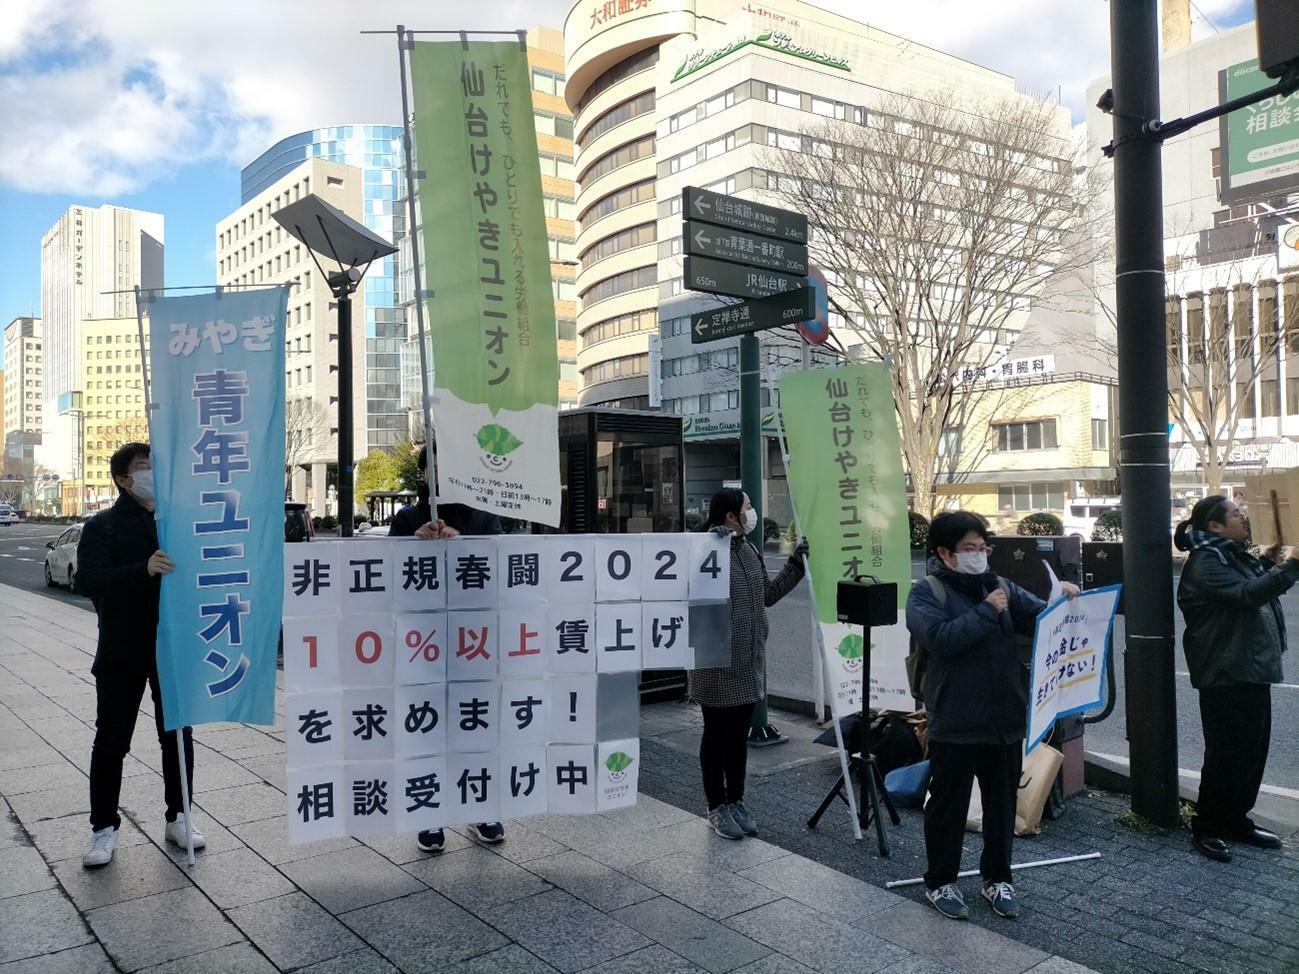 仙台市内での街頭宣伝の様子。非正規春闘実行委員会提供。